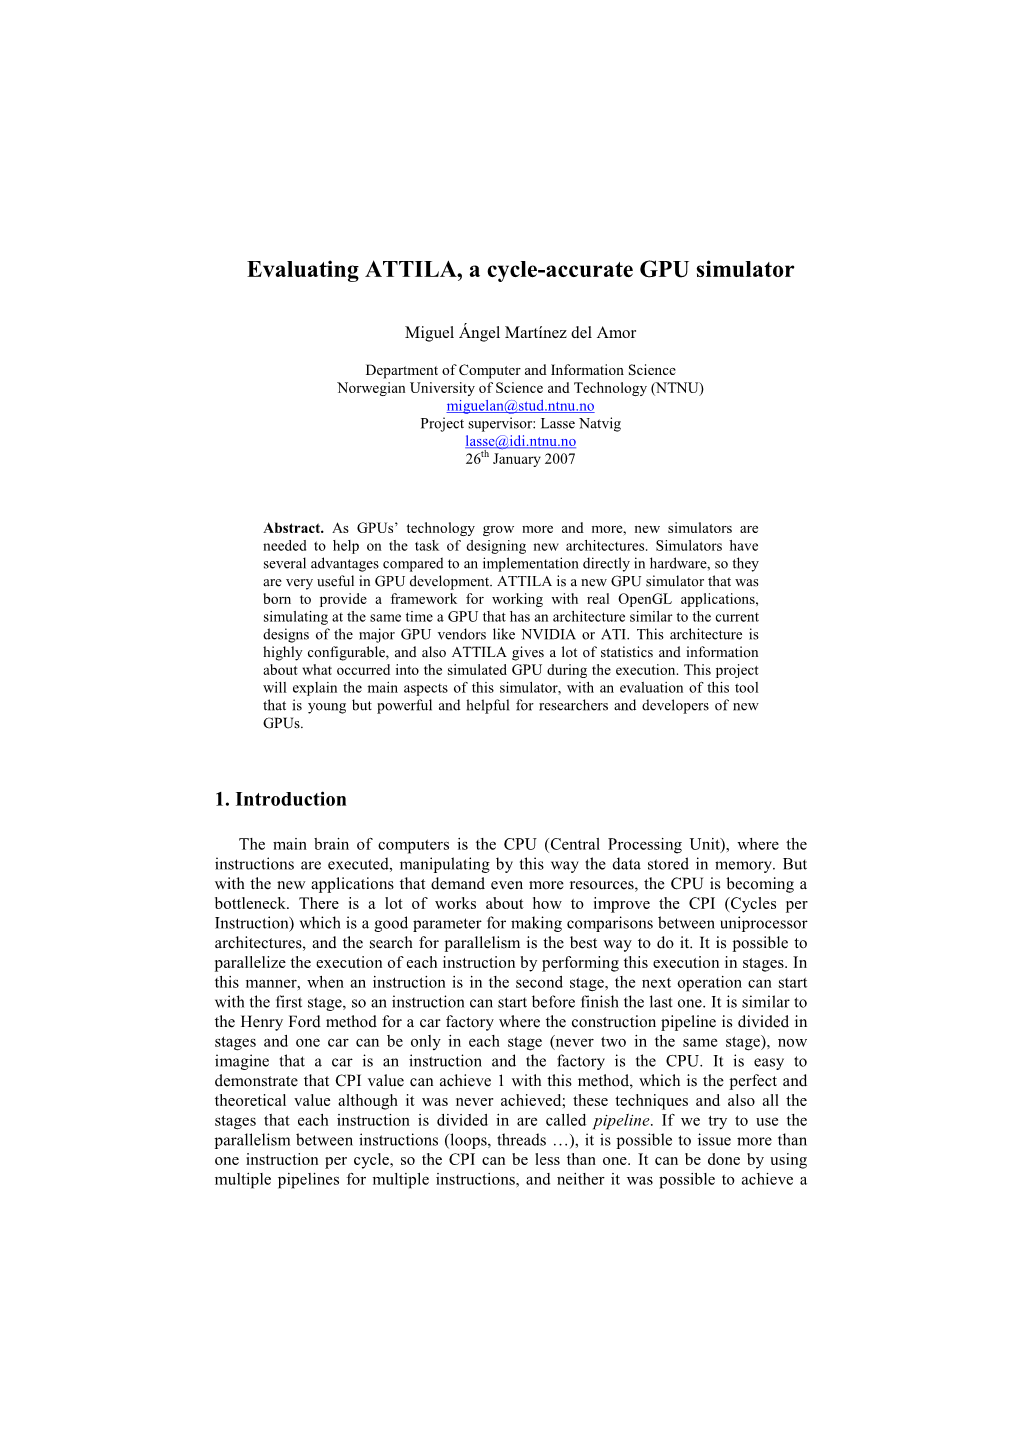 Evaluating ATTILA, a Cycle-Accurate GPU Simulator